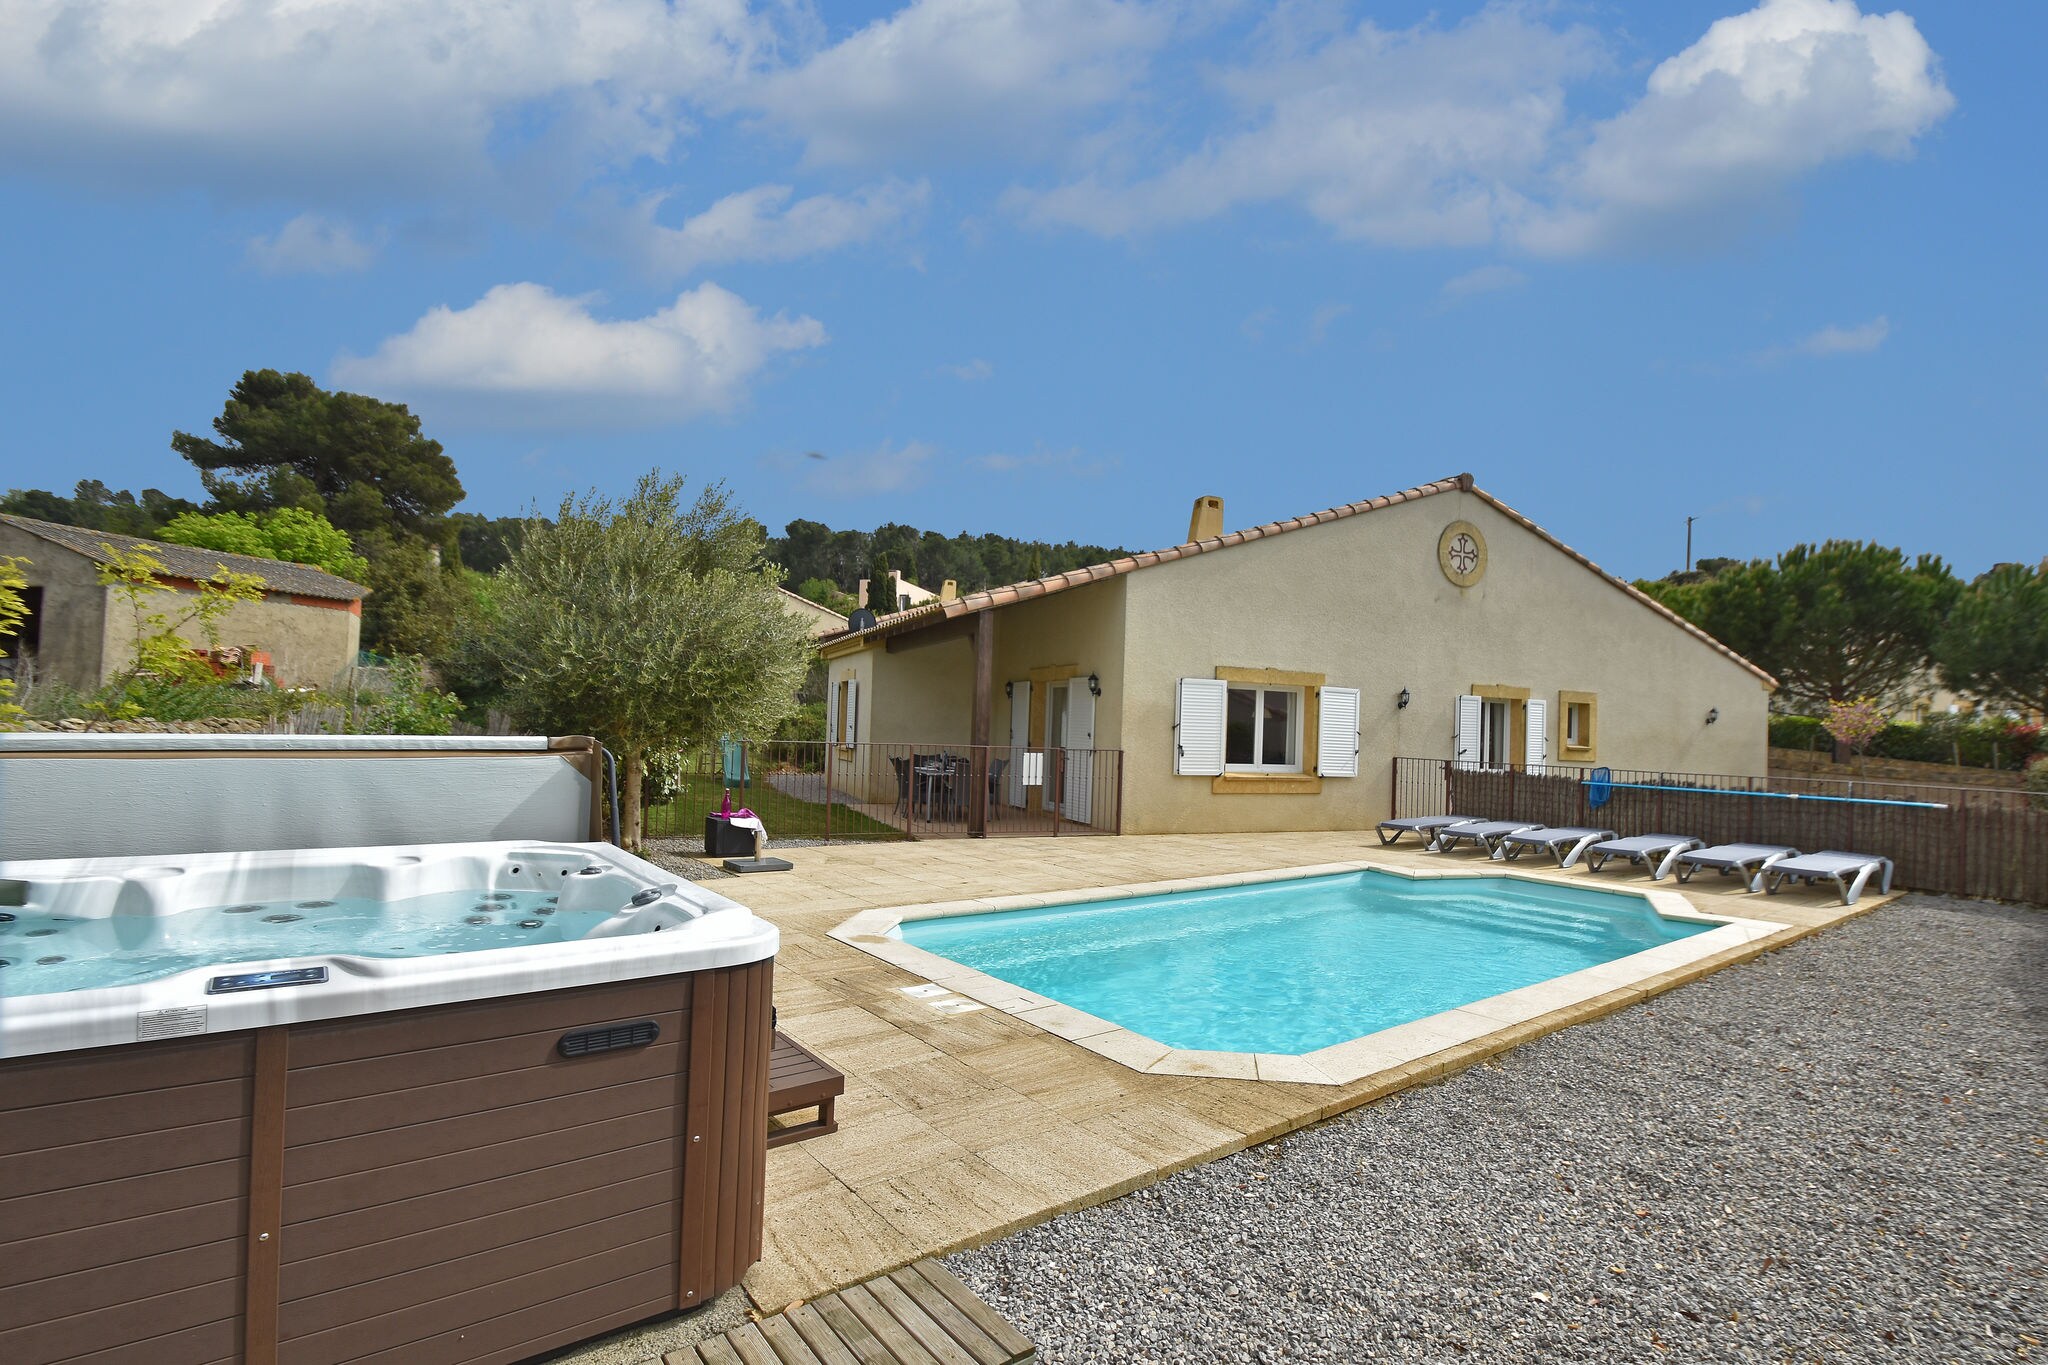 Stijlvolle vakantievilla in Zuid-Frankrijk met privézwembad